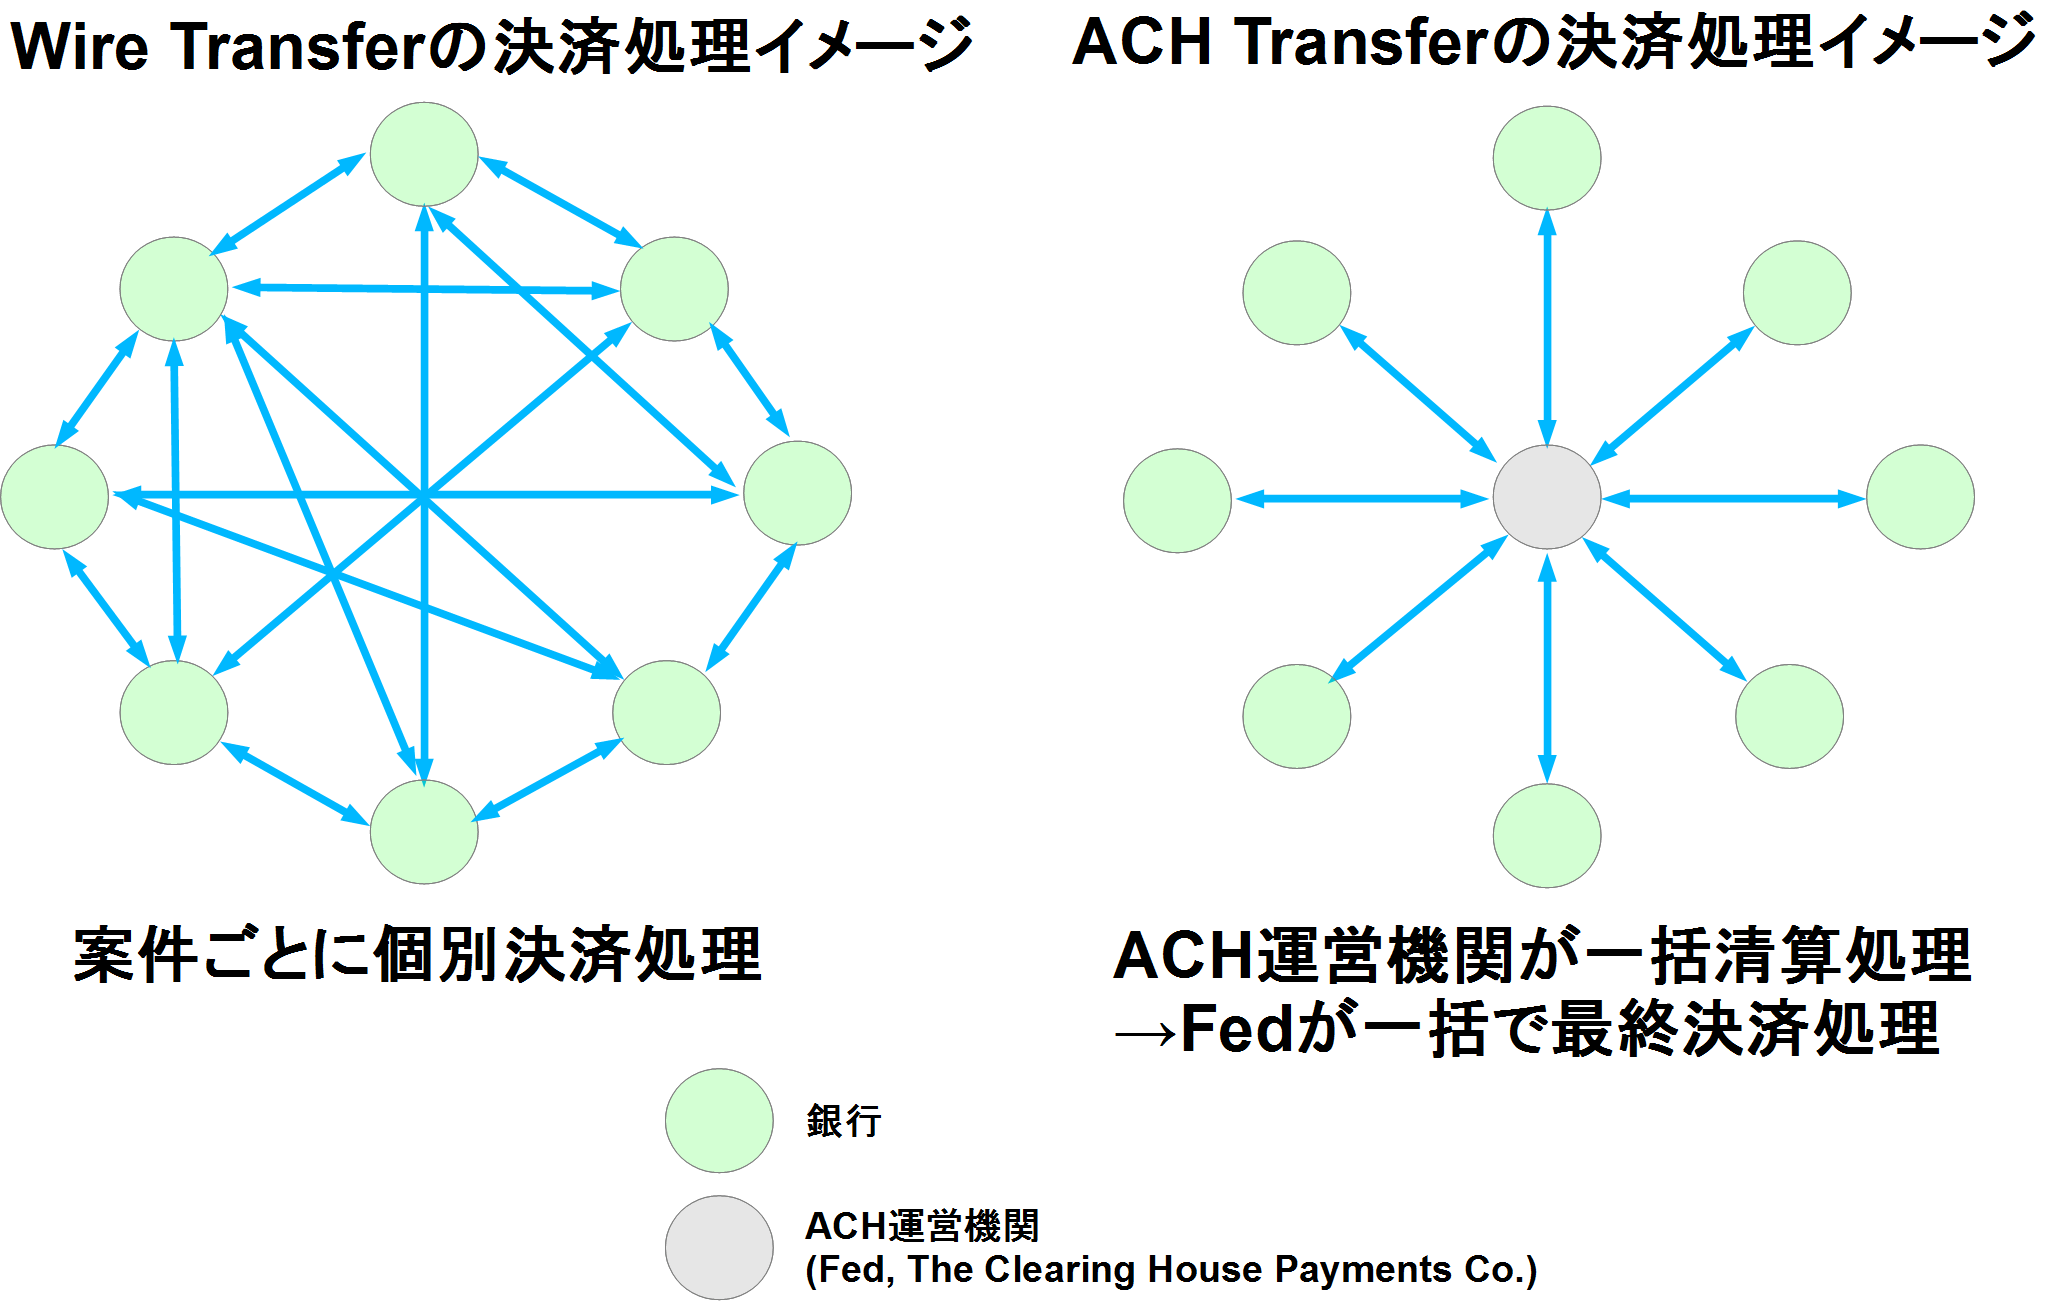 Wire TransferとACH Transferの決済処理